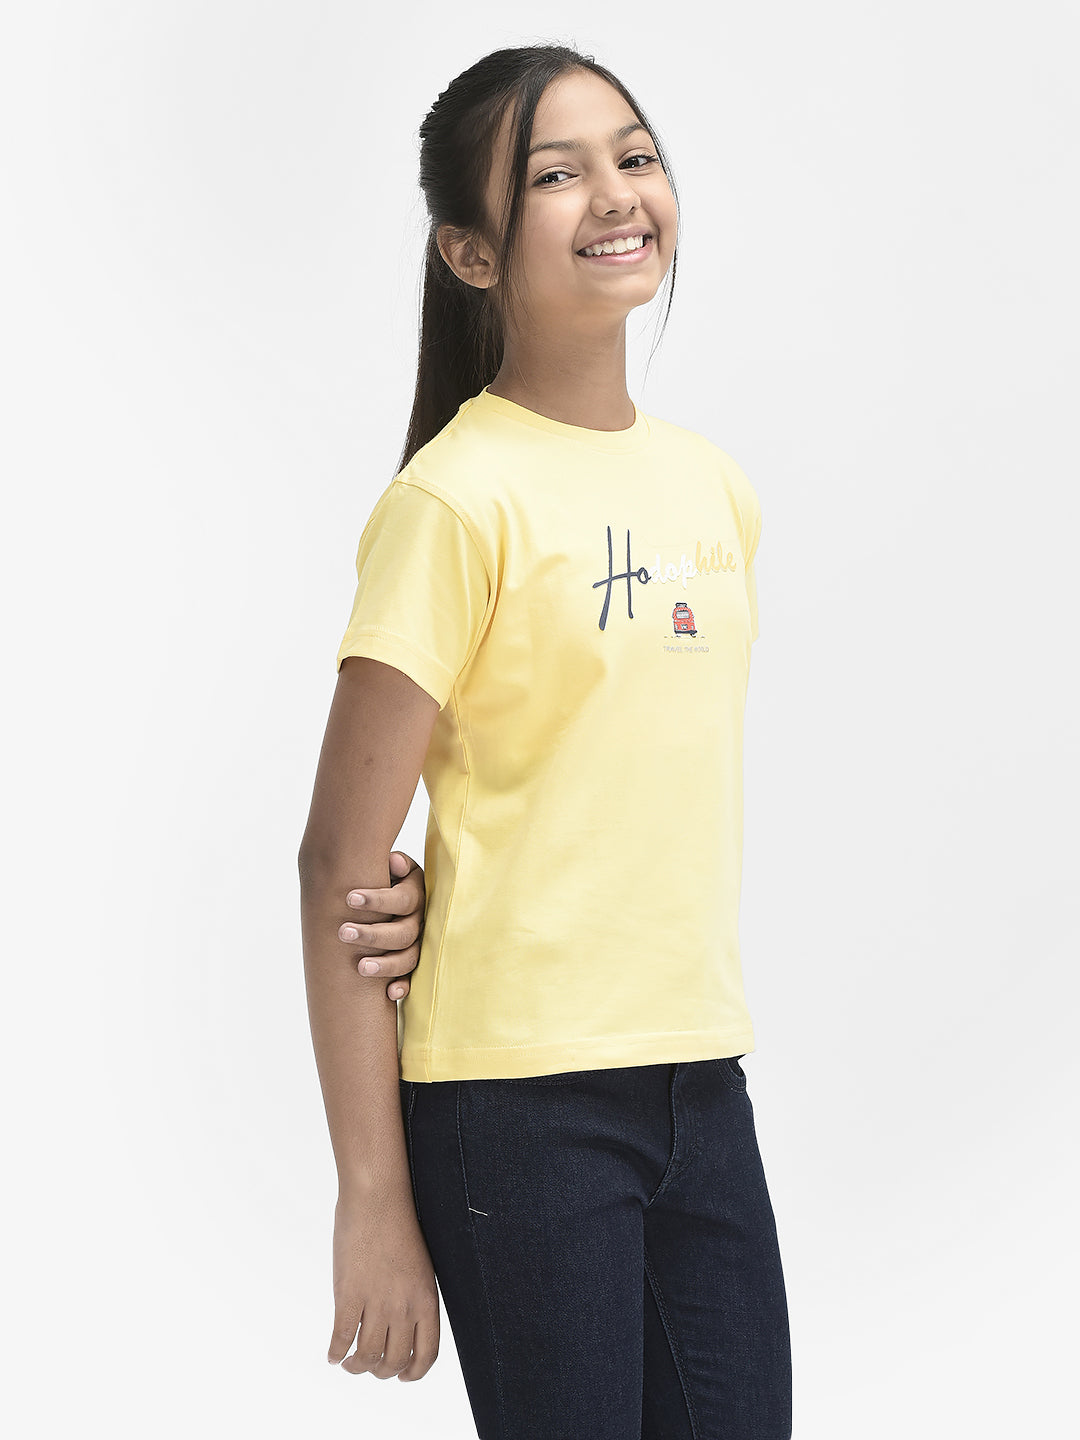  Yellow Typography Tshirt